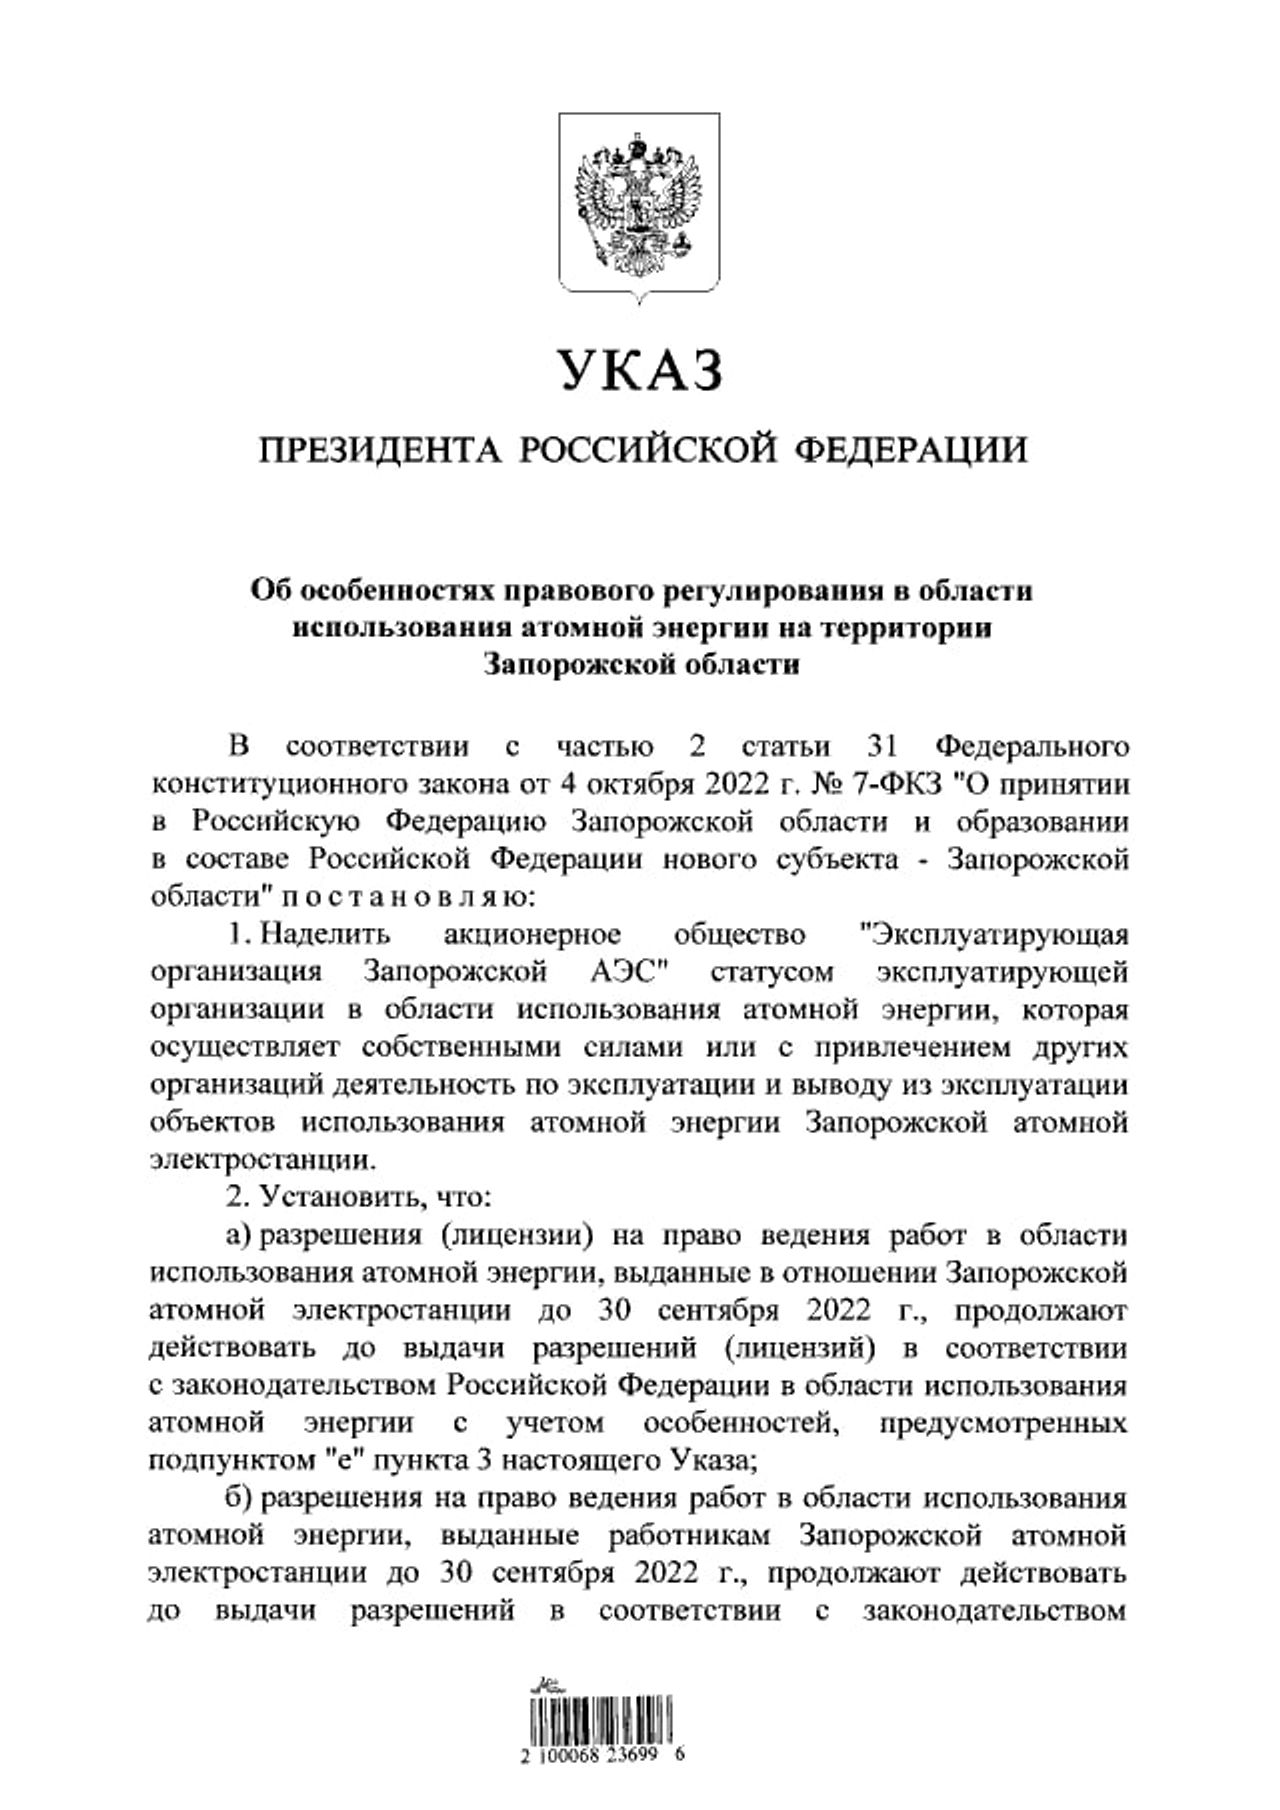 Путин подписал указ о принятии в федеральную собственность объектов ЗАЭС